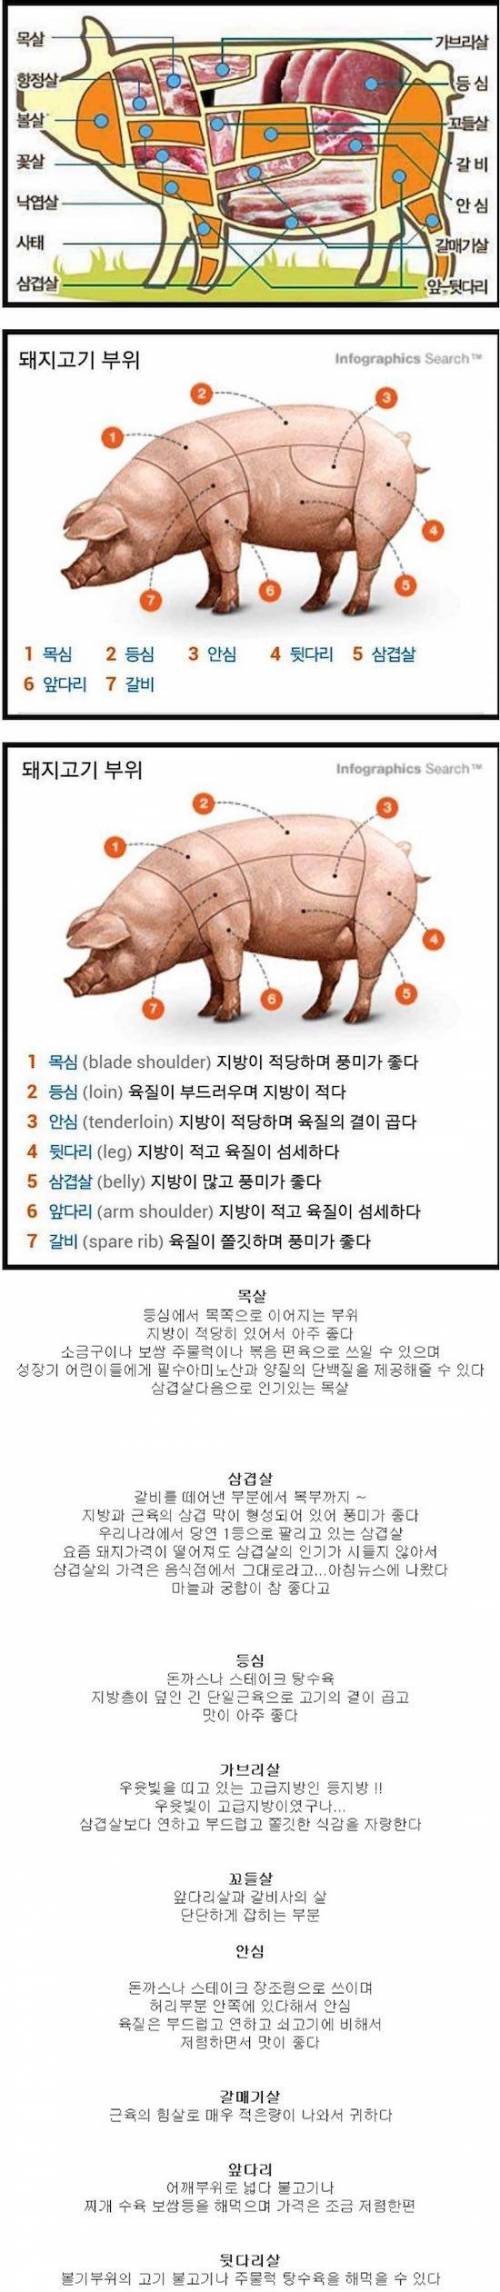 돼지고기 부위별 특징.jpg